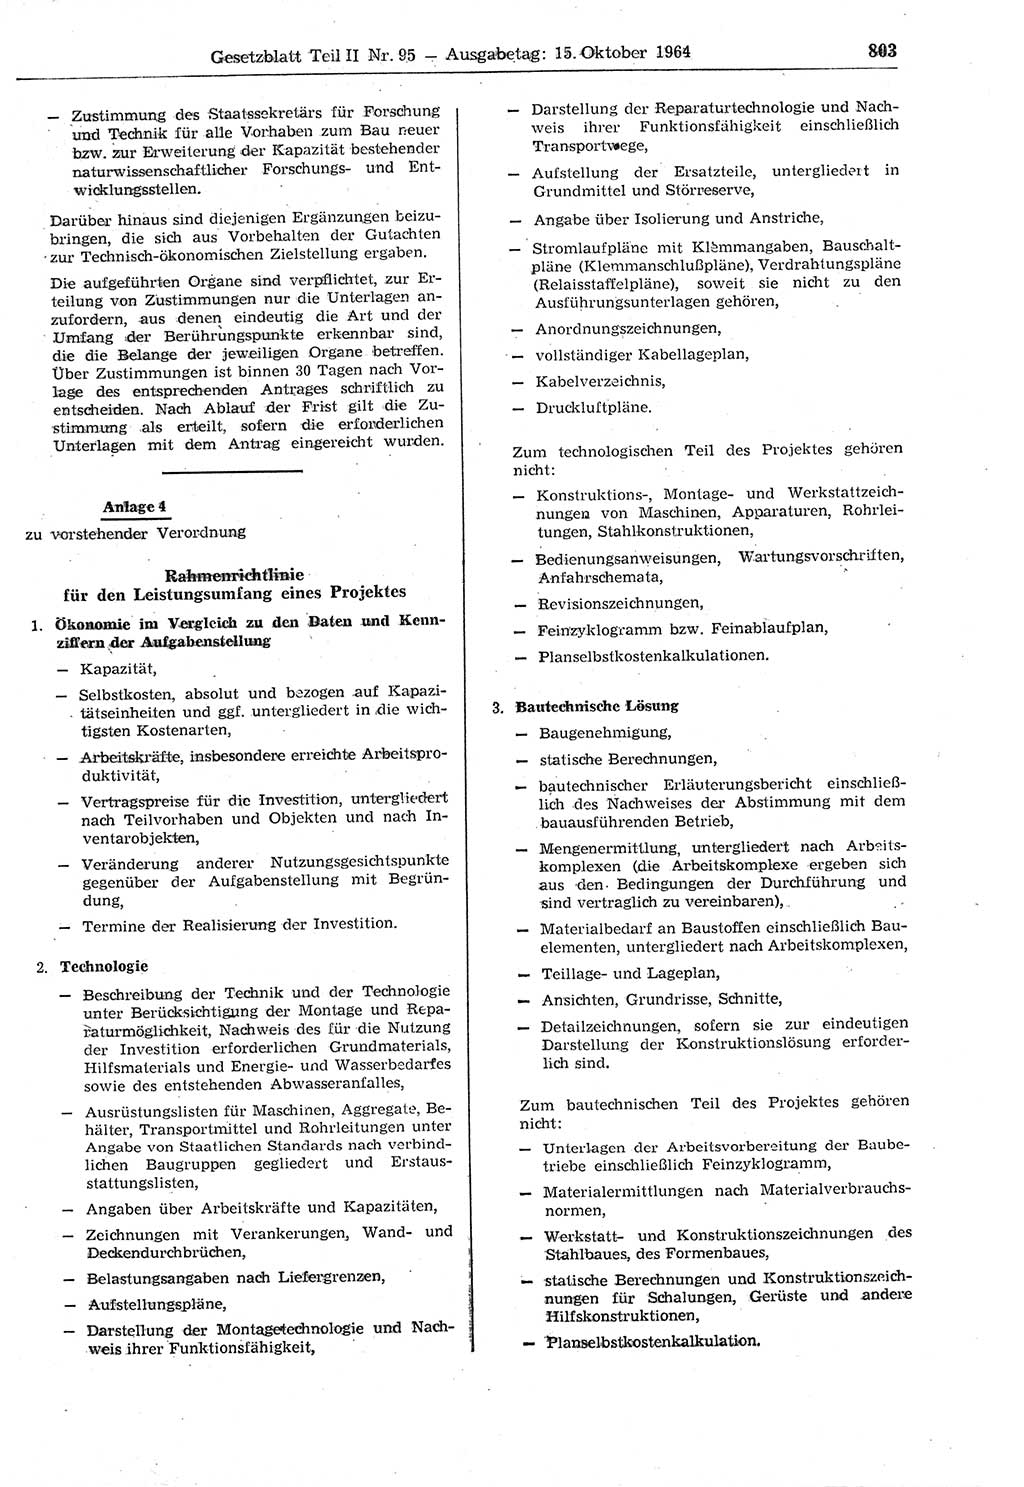 Gesetzblatt (GBl.) der Deutschen Demokratischen Republik (DDR) Teil ⅠⅠ 1964, Seite 803 (GBl. DDR ⅠⅠ 1964, S. 803)